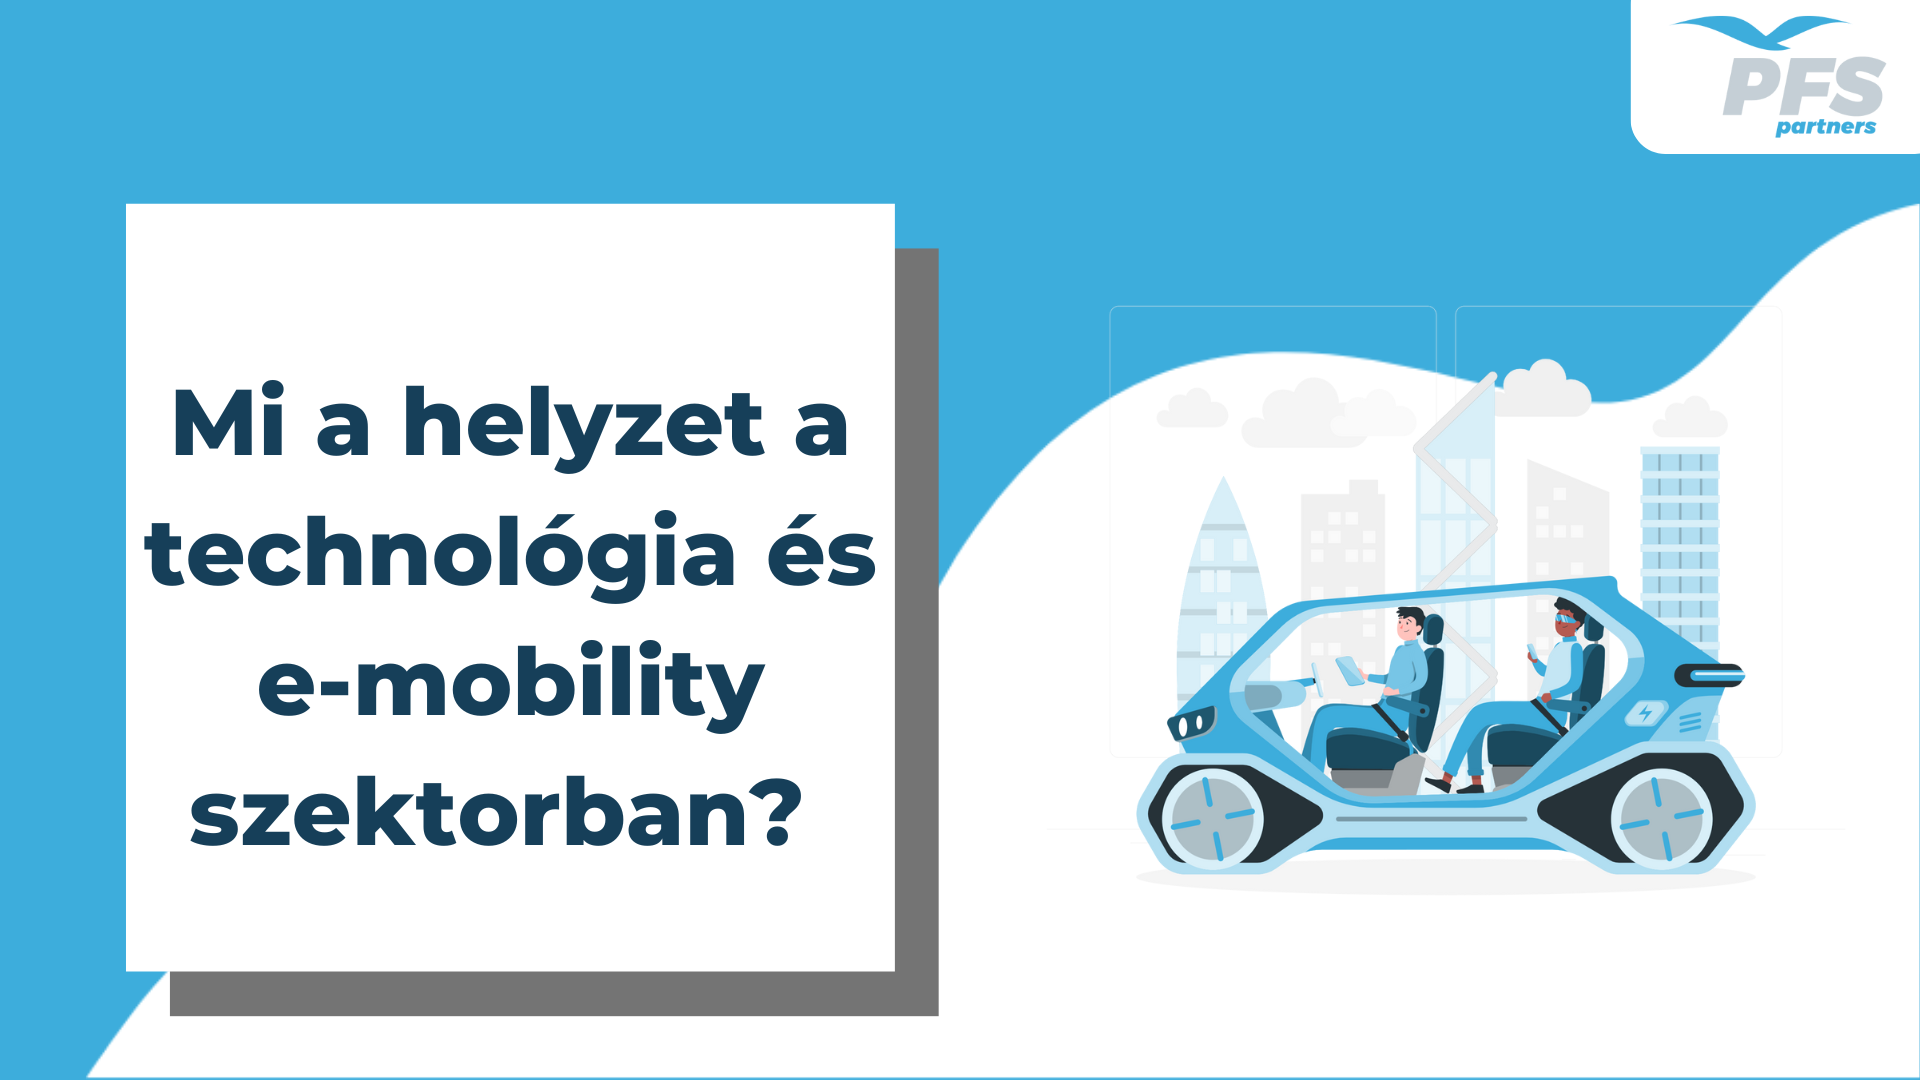 Mi a helyzet a technológiai és e-mobility szektorban?